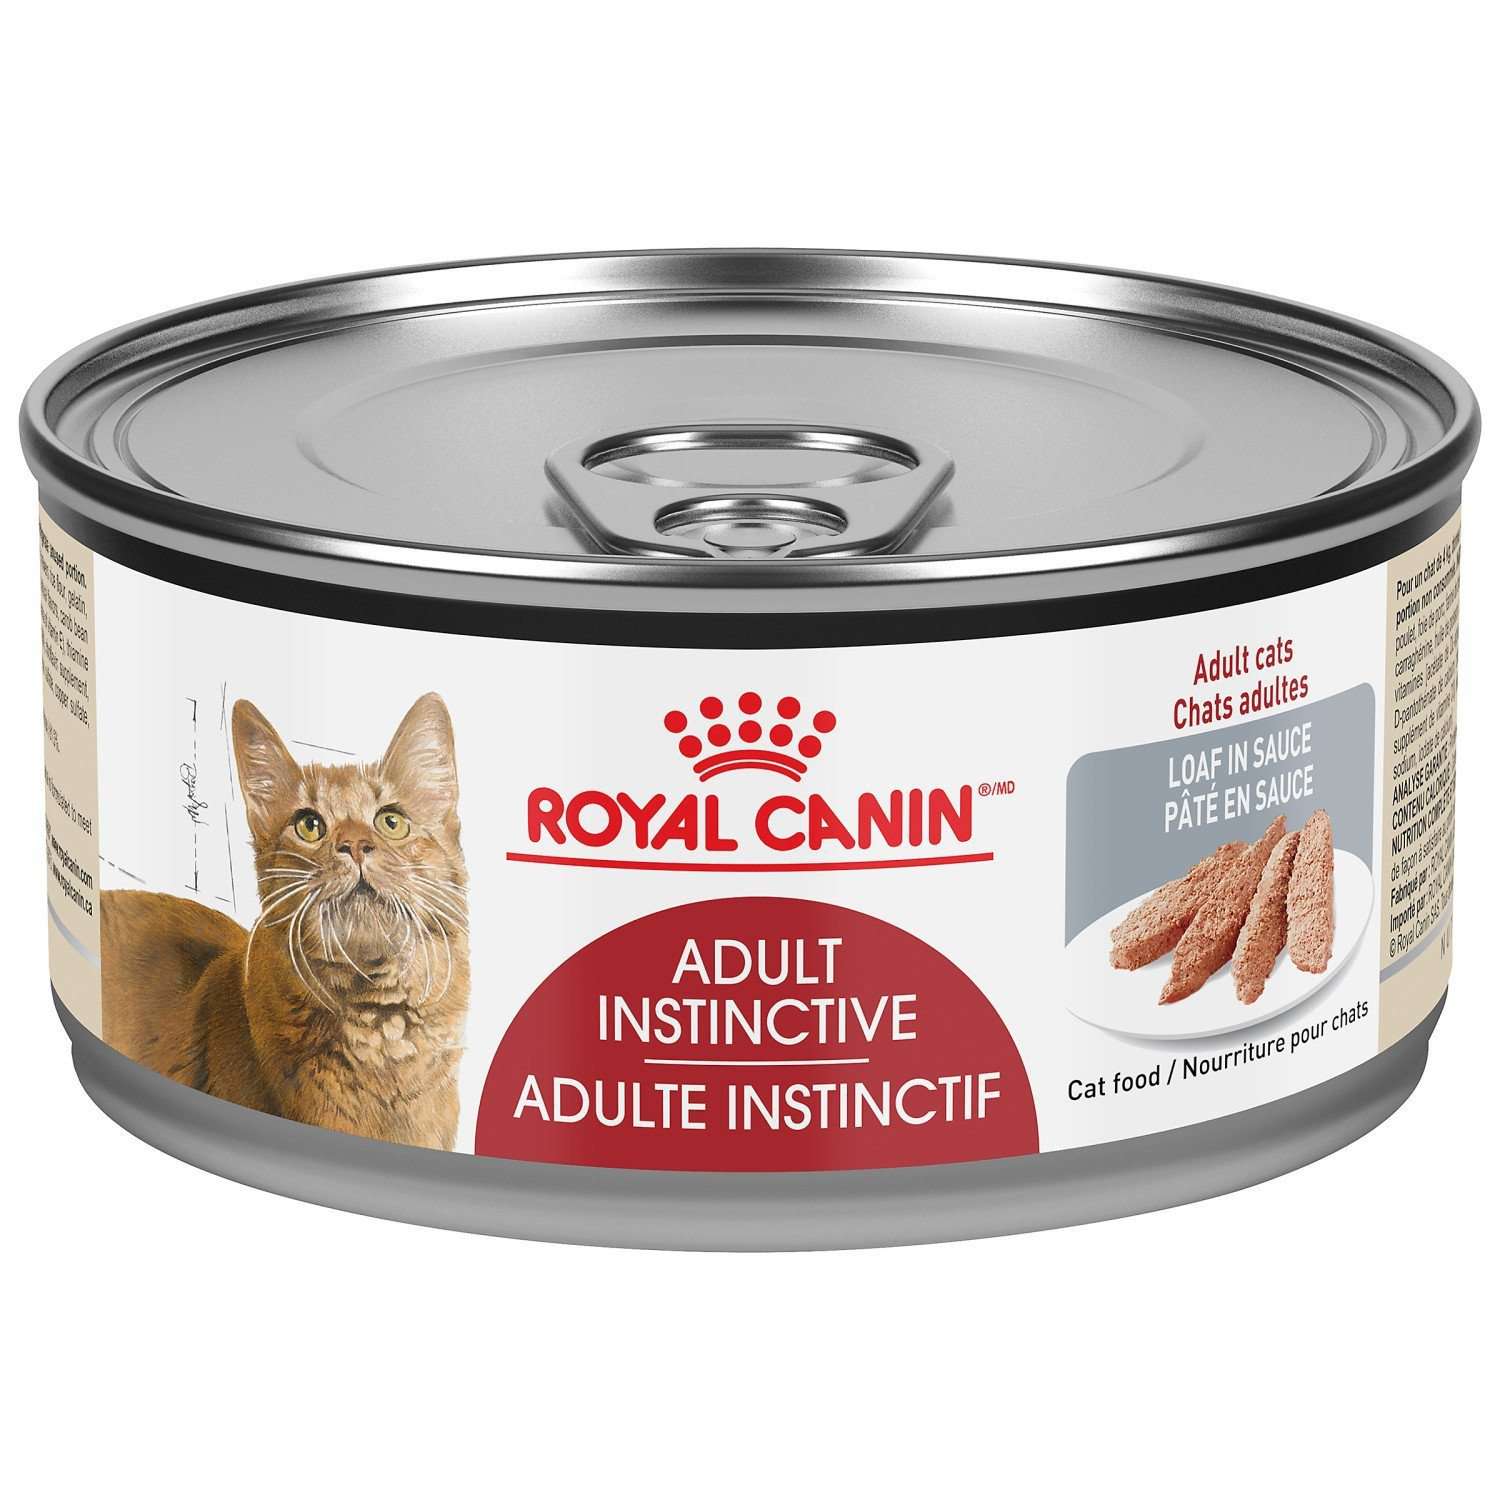 Royal Canin Nourriture En Conserve Pour Chat Adult Instinctive Pain En Sauce